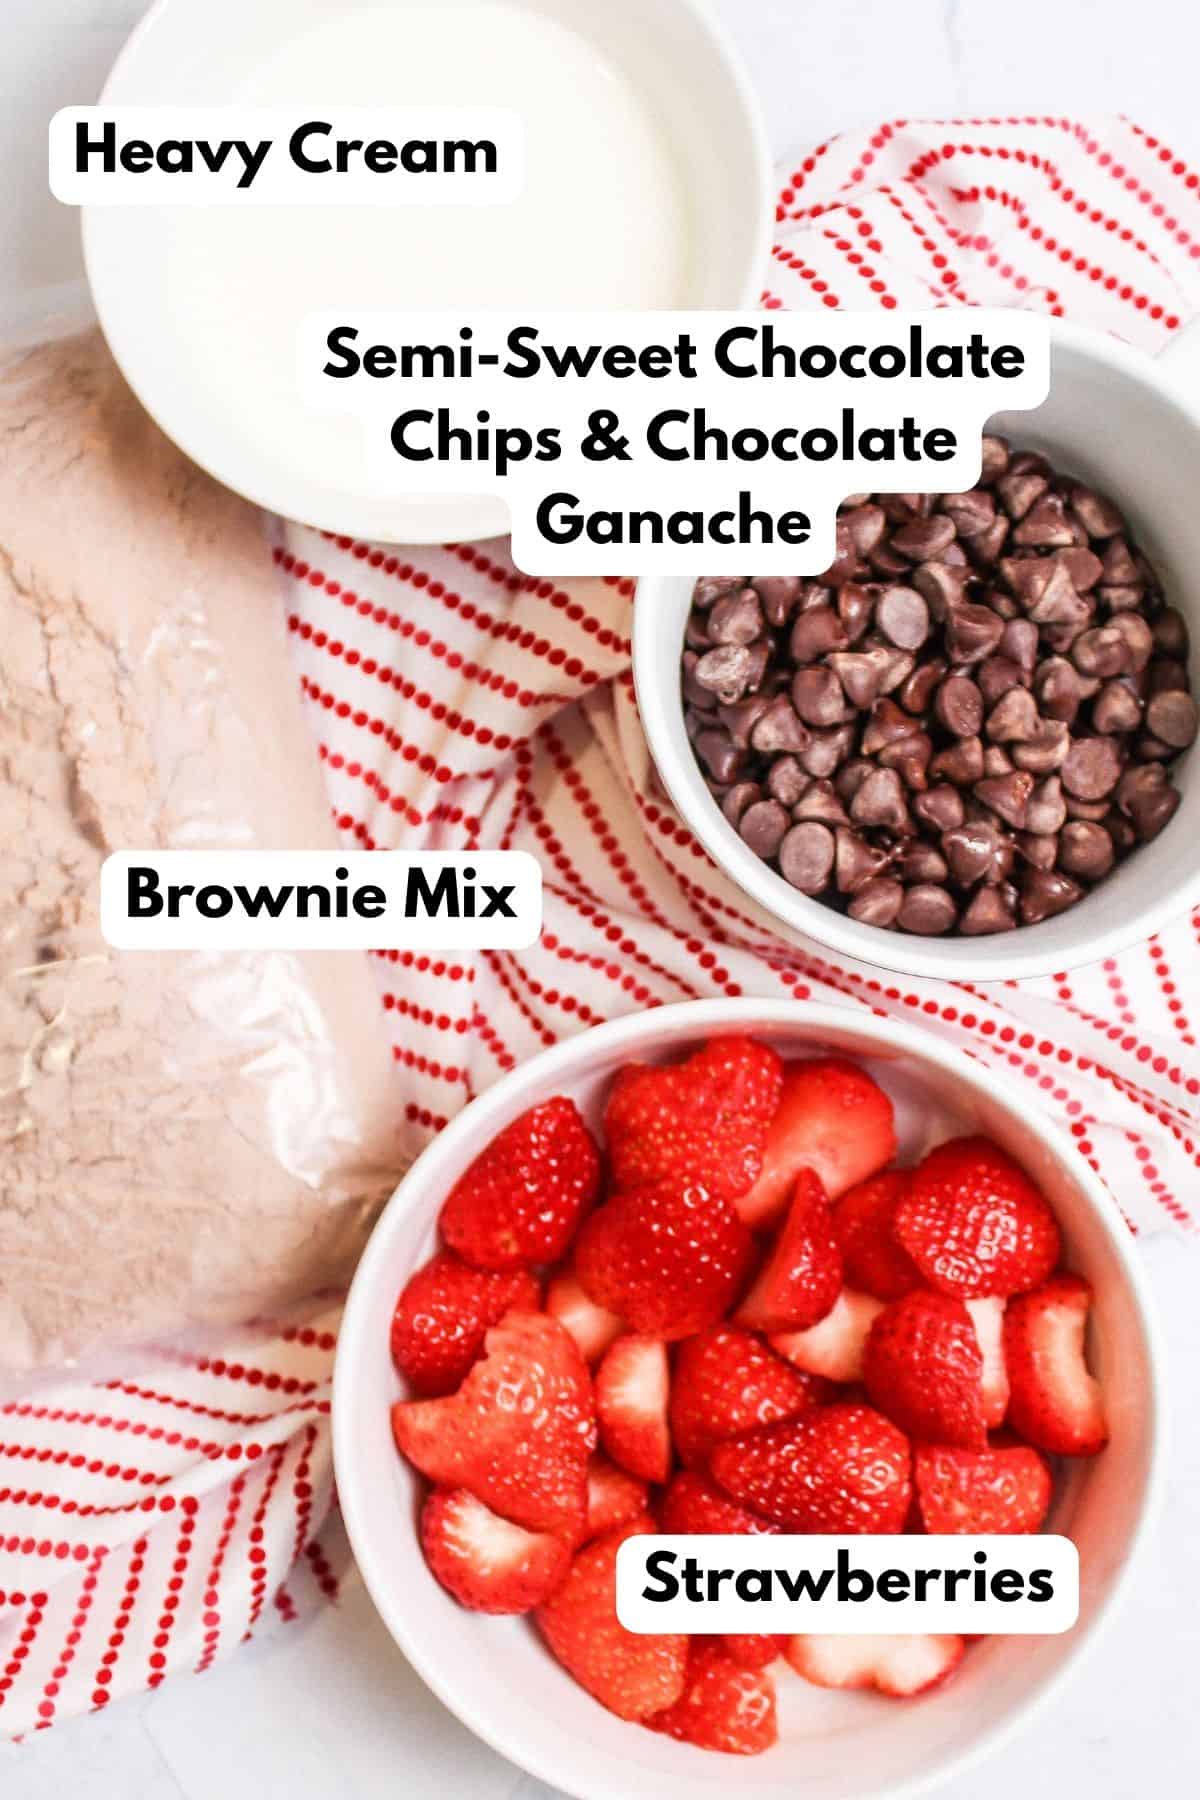 ingredients needed to make Strawberries in Brownies